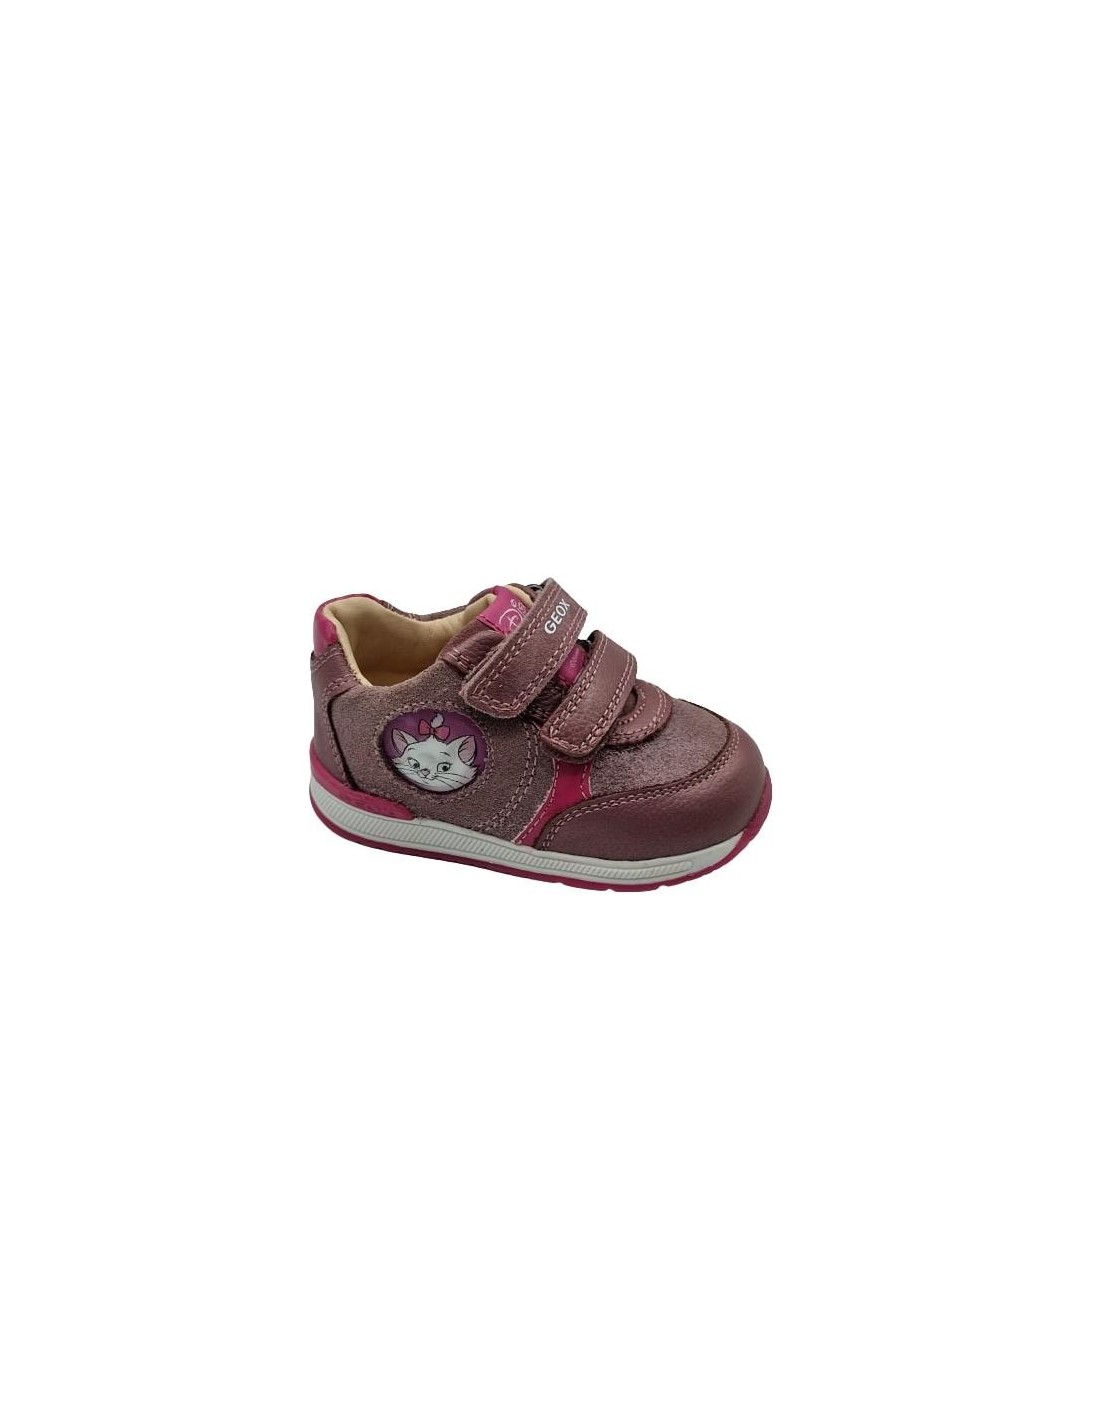 Zapato primeros pasos para bebé, de Geox Color ROSA Talla 20